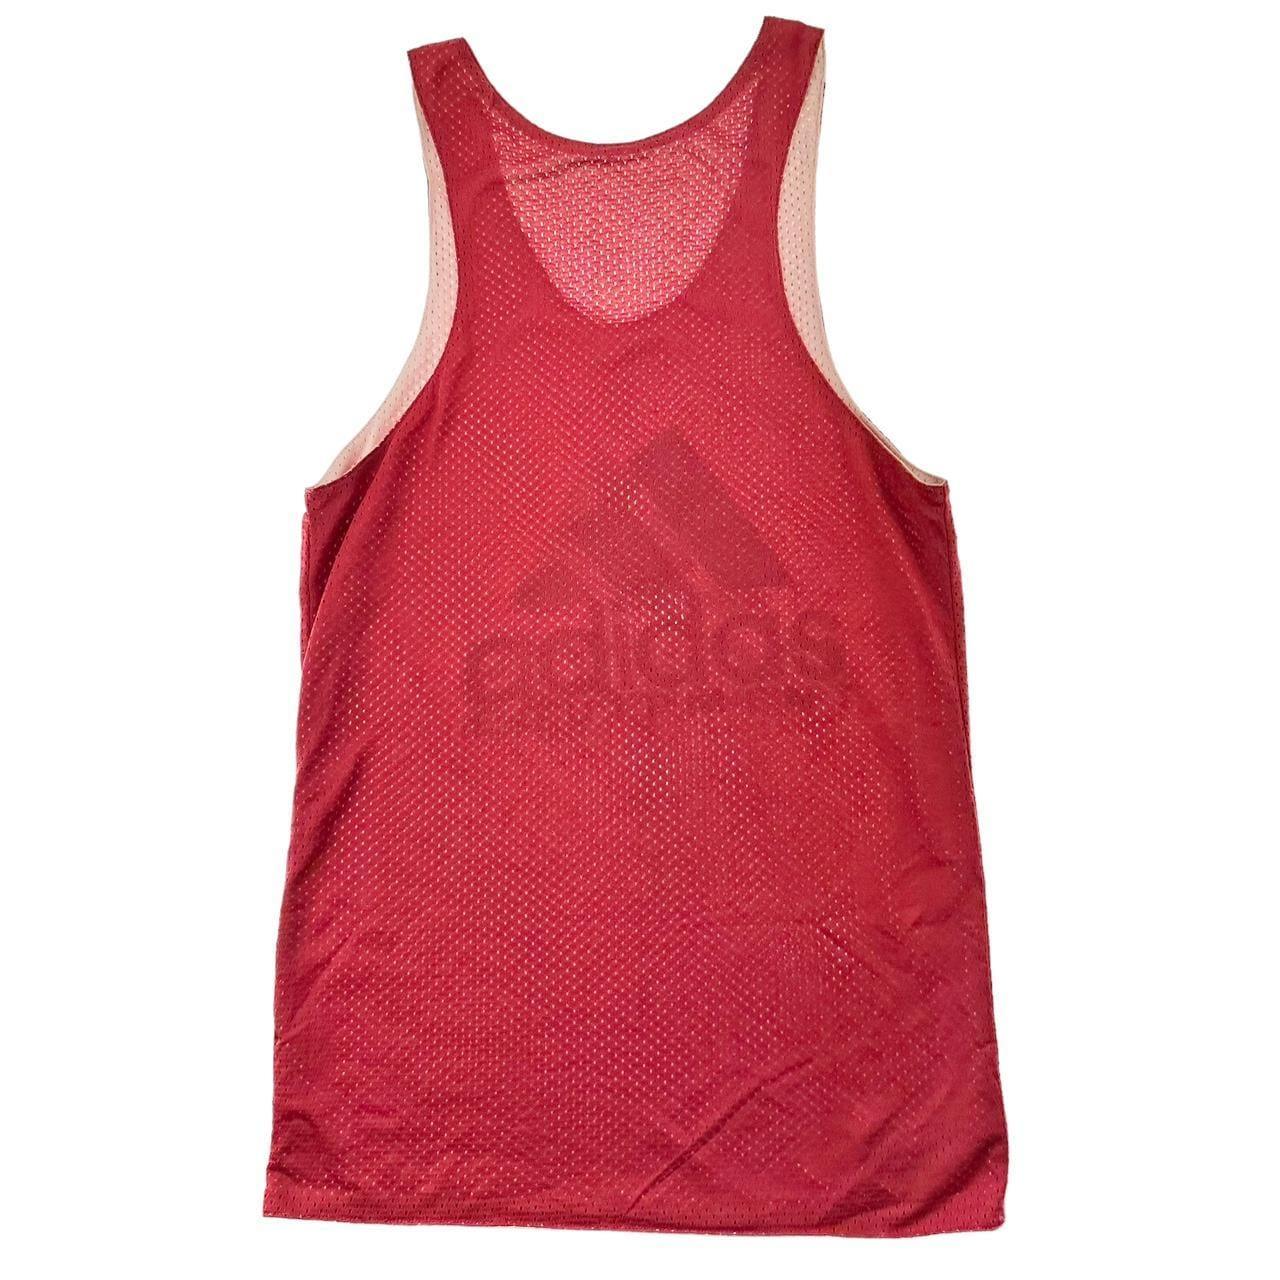 Vintage Adidas equipment reversible vest size M - Known Source